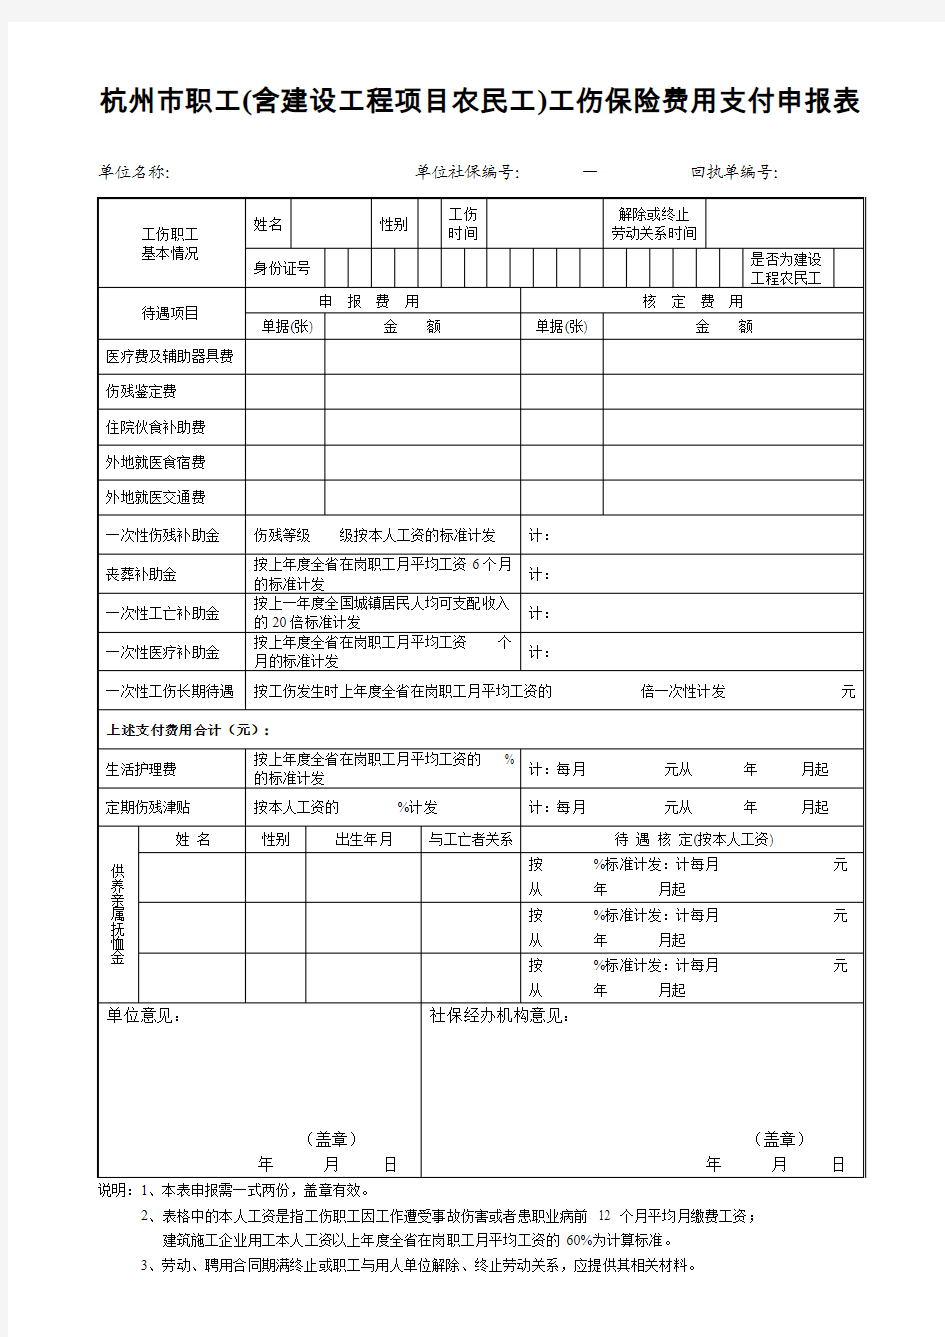 杭州市职工(含建设工程项目农民工)工伤保险费用支付申报表